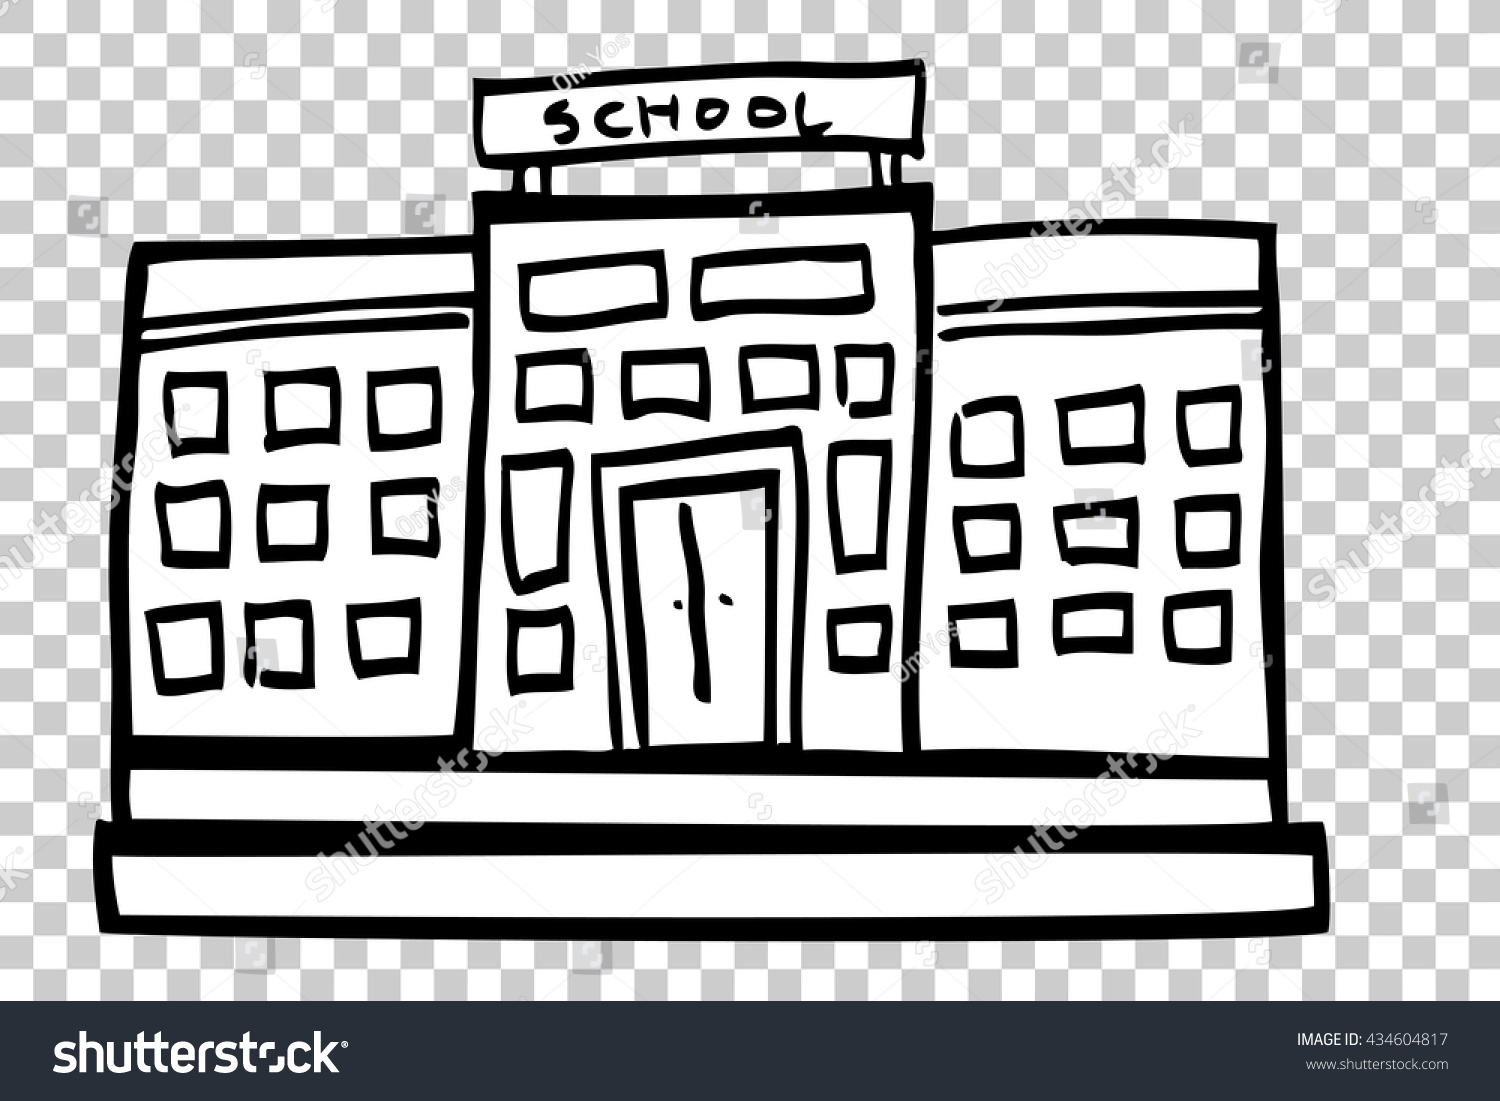 Hand Draw Sketch School Building Stock Vector 434604817 - Shutterstock